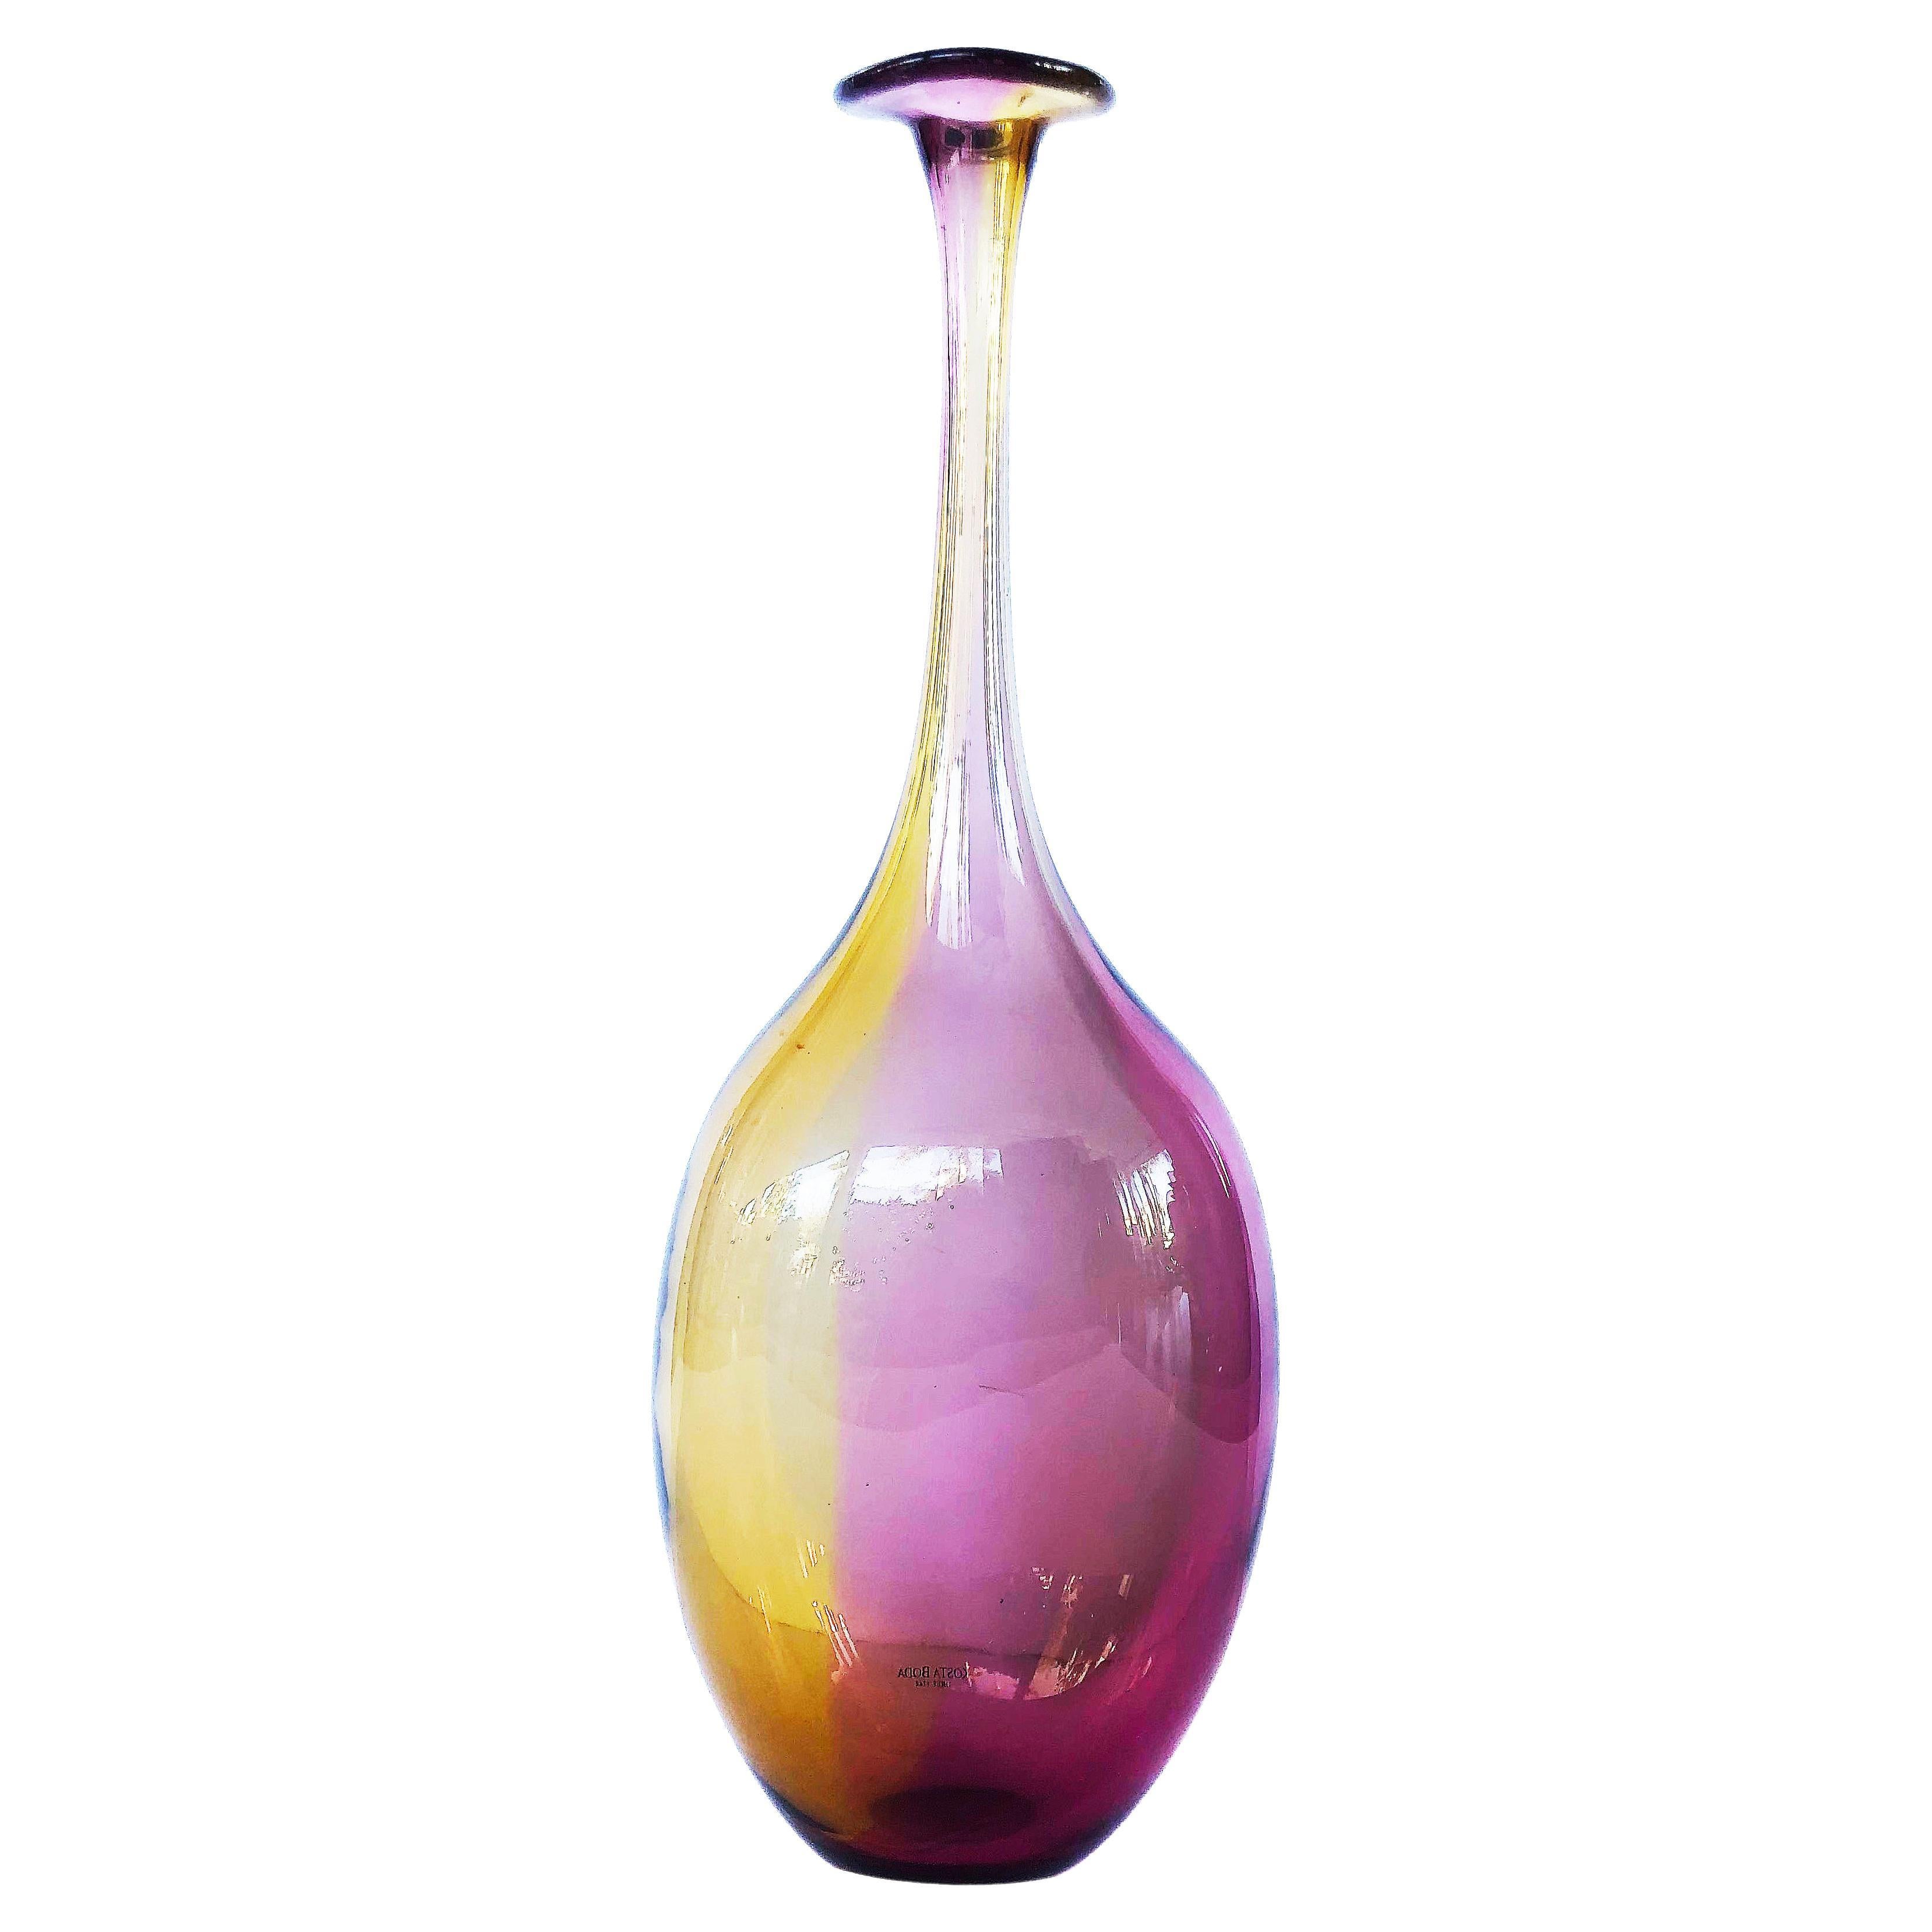 Kosta Boda Art Glass Fidji Bottle Vase by Kjell Engman